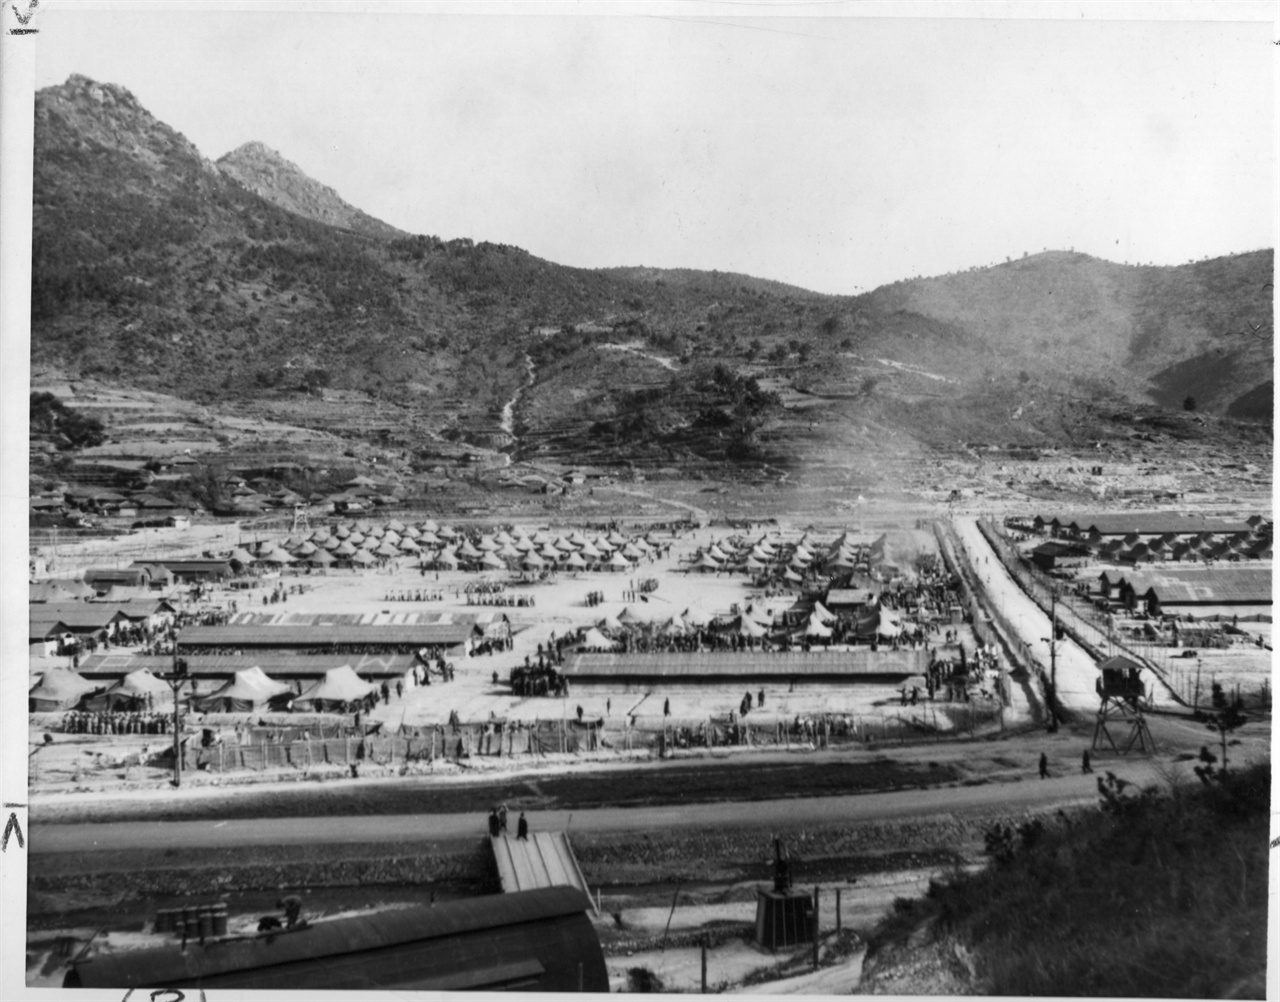  1951. 12. 27. 거제포로수용소 전경, 1950년 11월 27일부터 1953년 7월 27일까지 한국전쟁 중 인민군 15만여 명, 중국군 2만여 명 최대 17만 3천여 명의 포로를 수용했던 곳이다. 